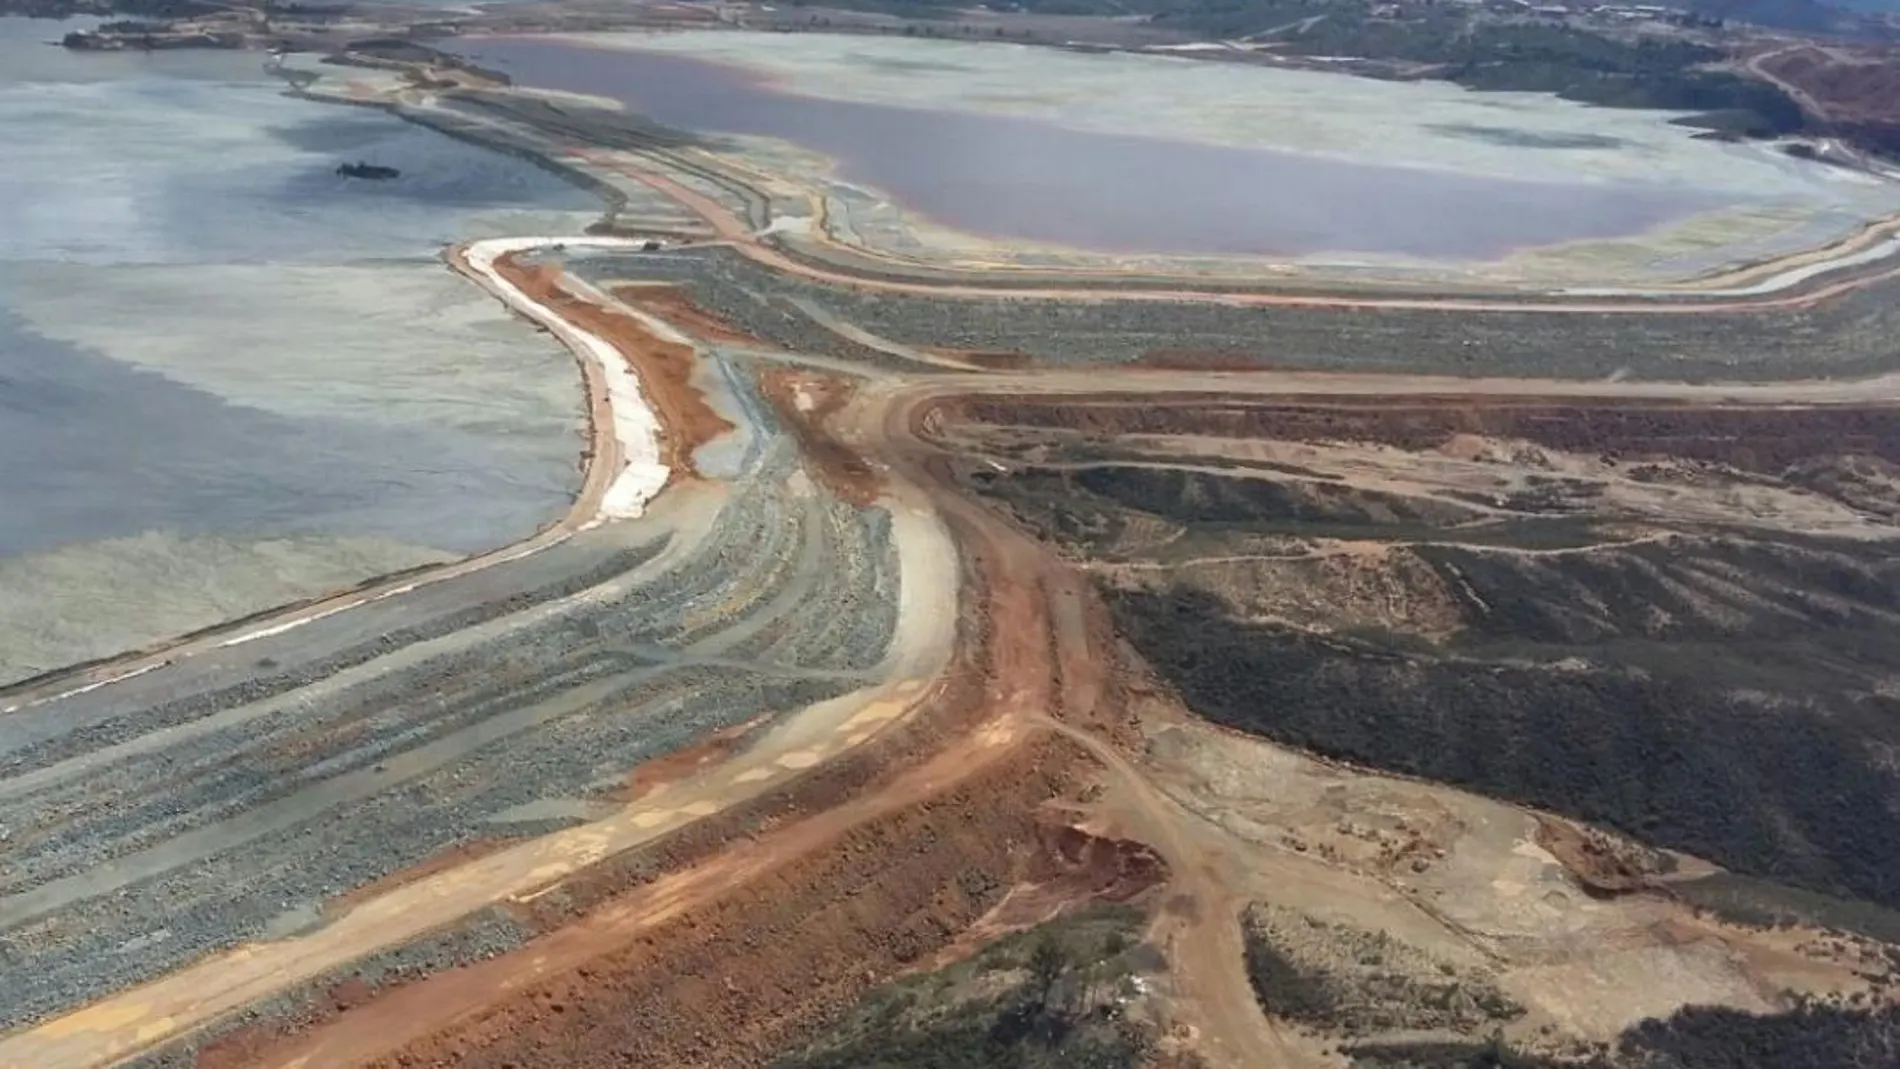 Vista aérea de las balsas de lodos de la mina de Riotinto, situada en la provincia de Huelva